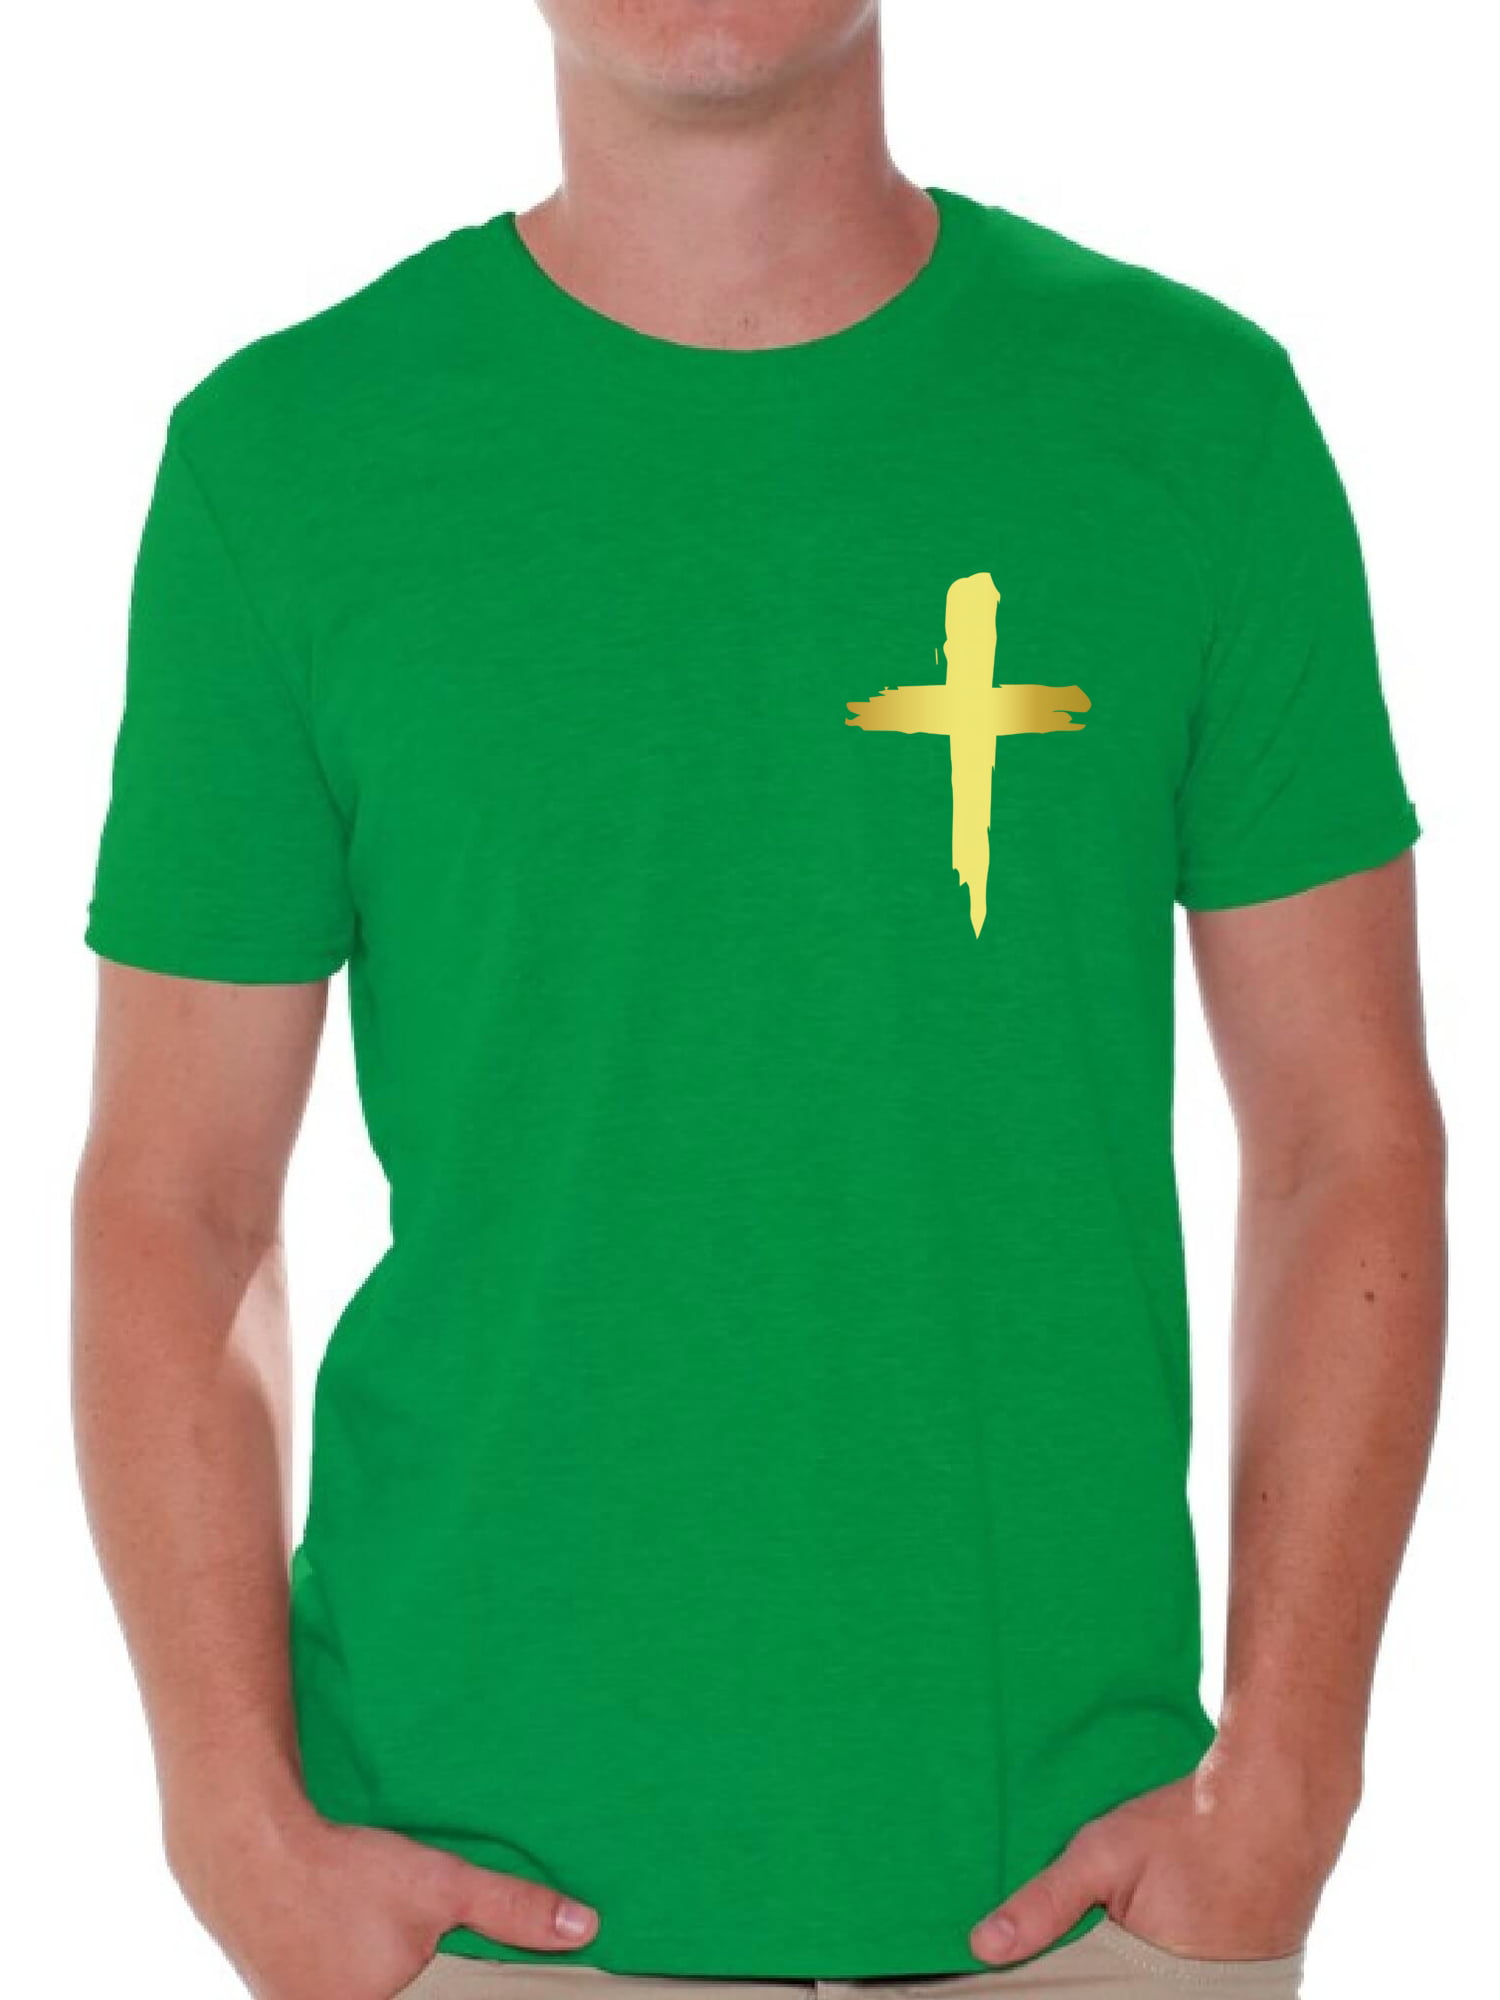 Awkward Styles Golden Cross Shirt for Men Christian Mens Shirts ...